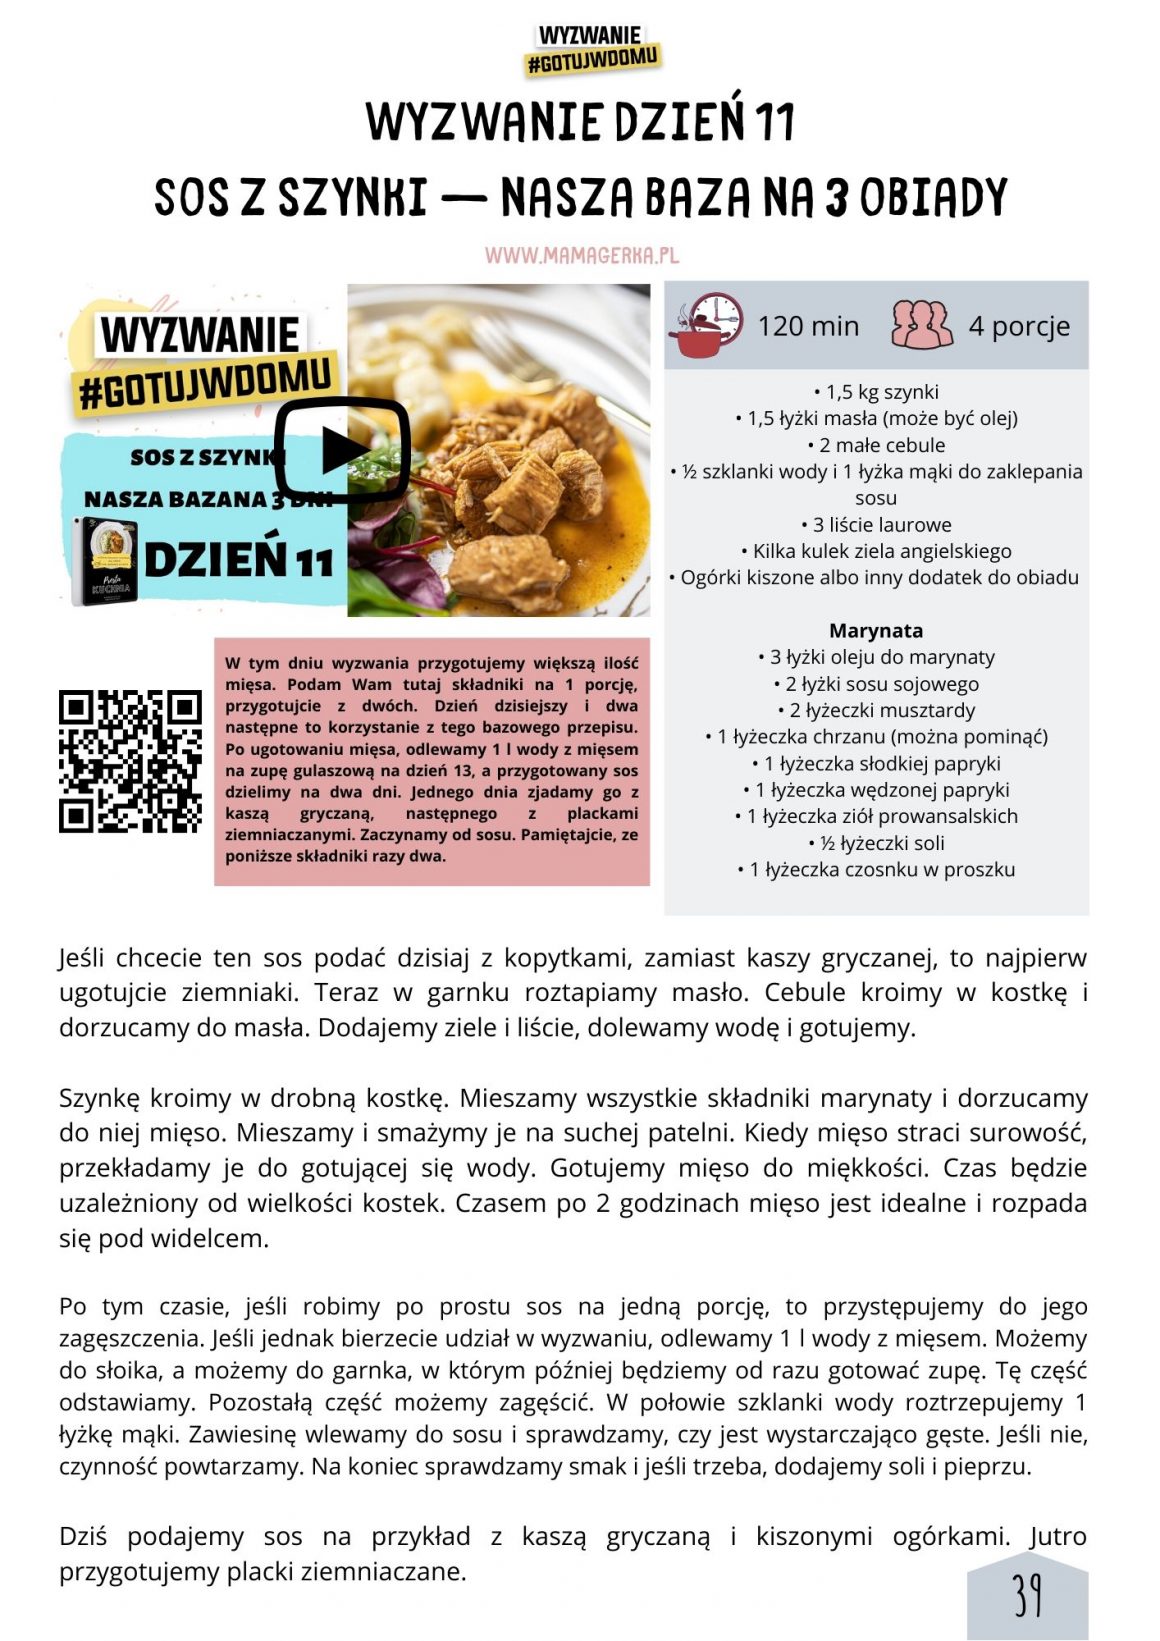 e-book mamagerka Prosta Kuchnia, szybkie obiady, proste jedzenie, co na obiad